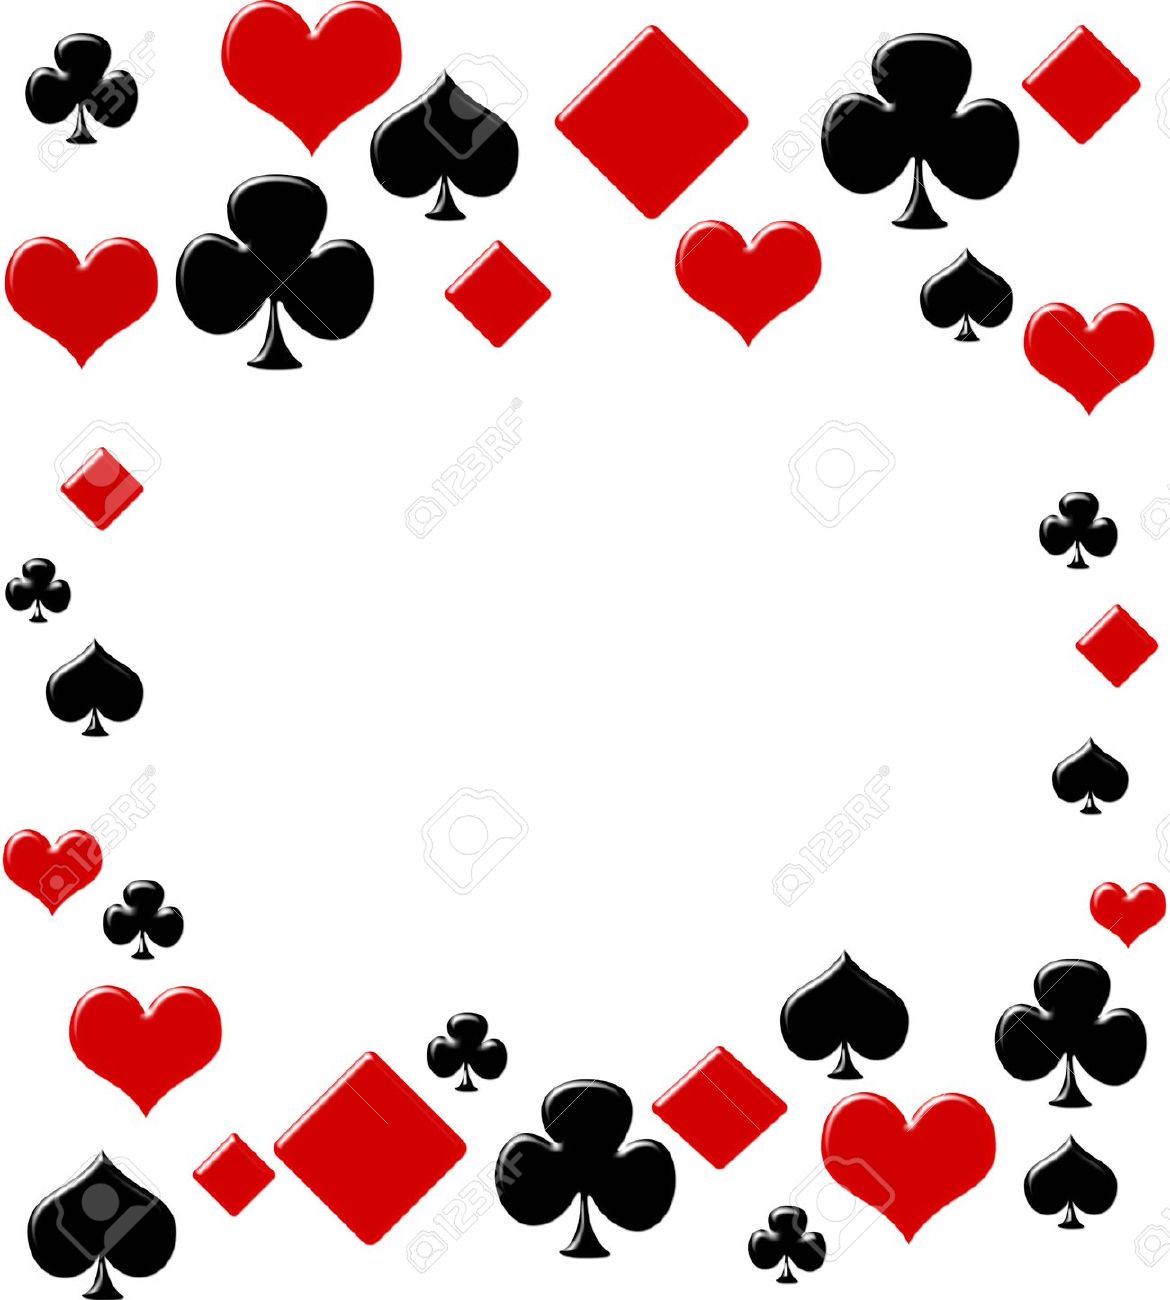 Casino en ligne : j’adore le poker et le black jack